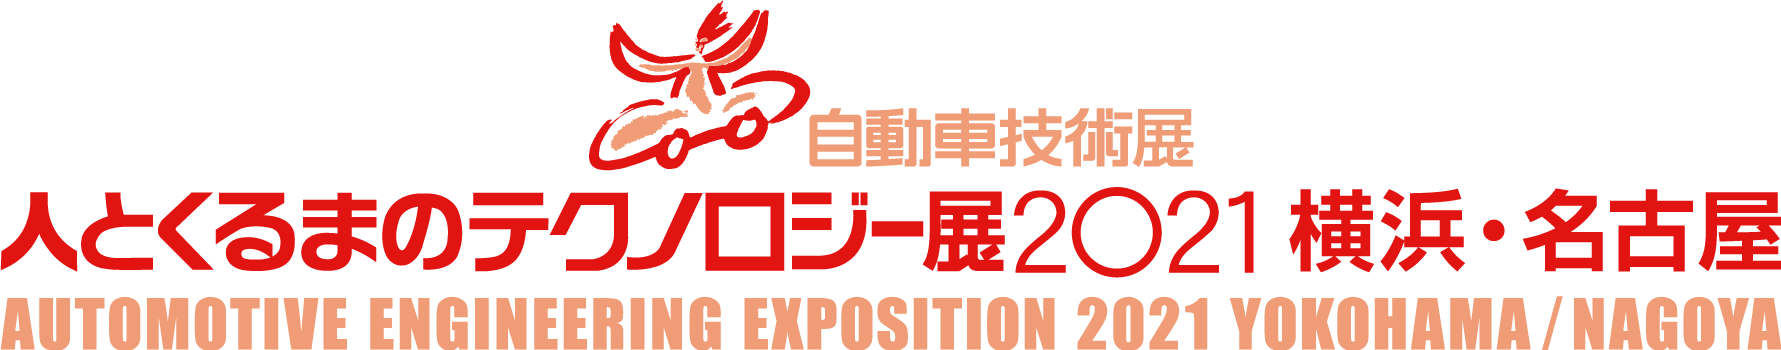 【お知らせ】※横浜・名古屋展示会は開催中止 『人とくるまのテクノロジー展2021』